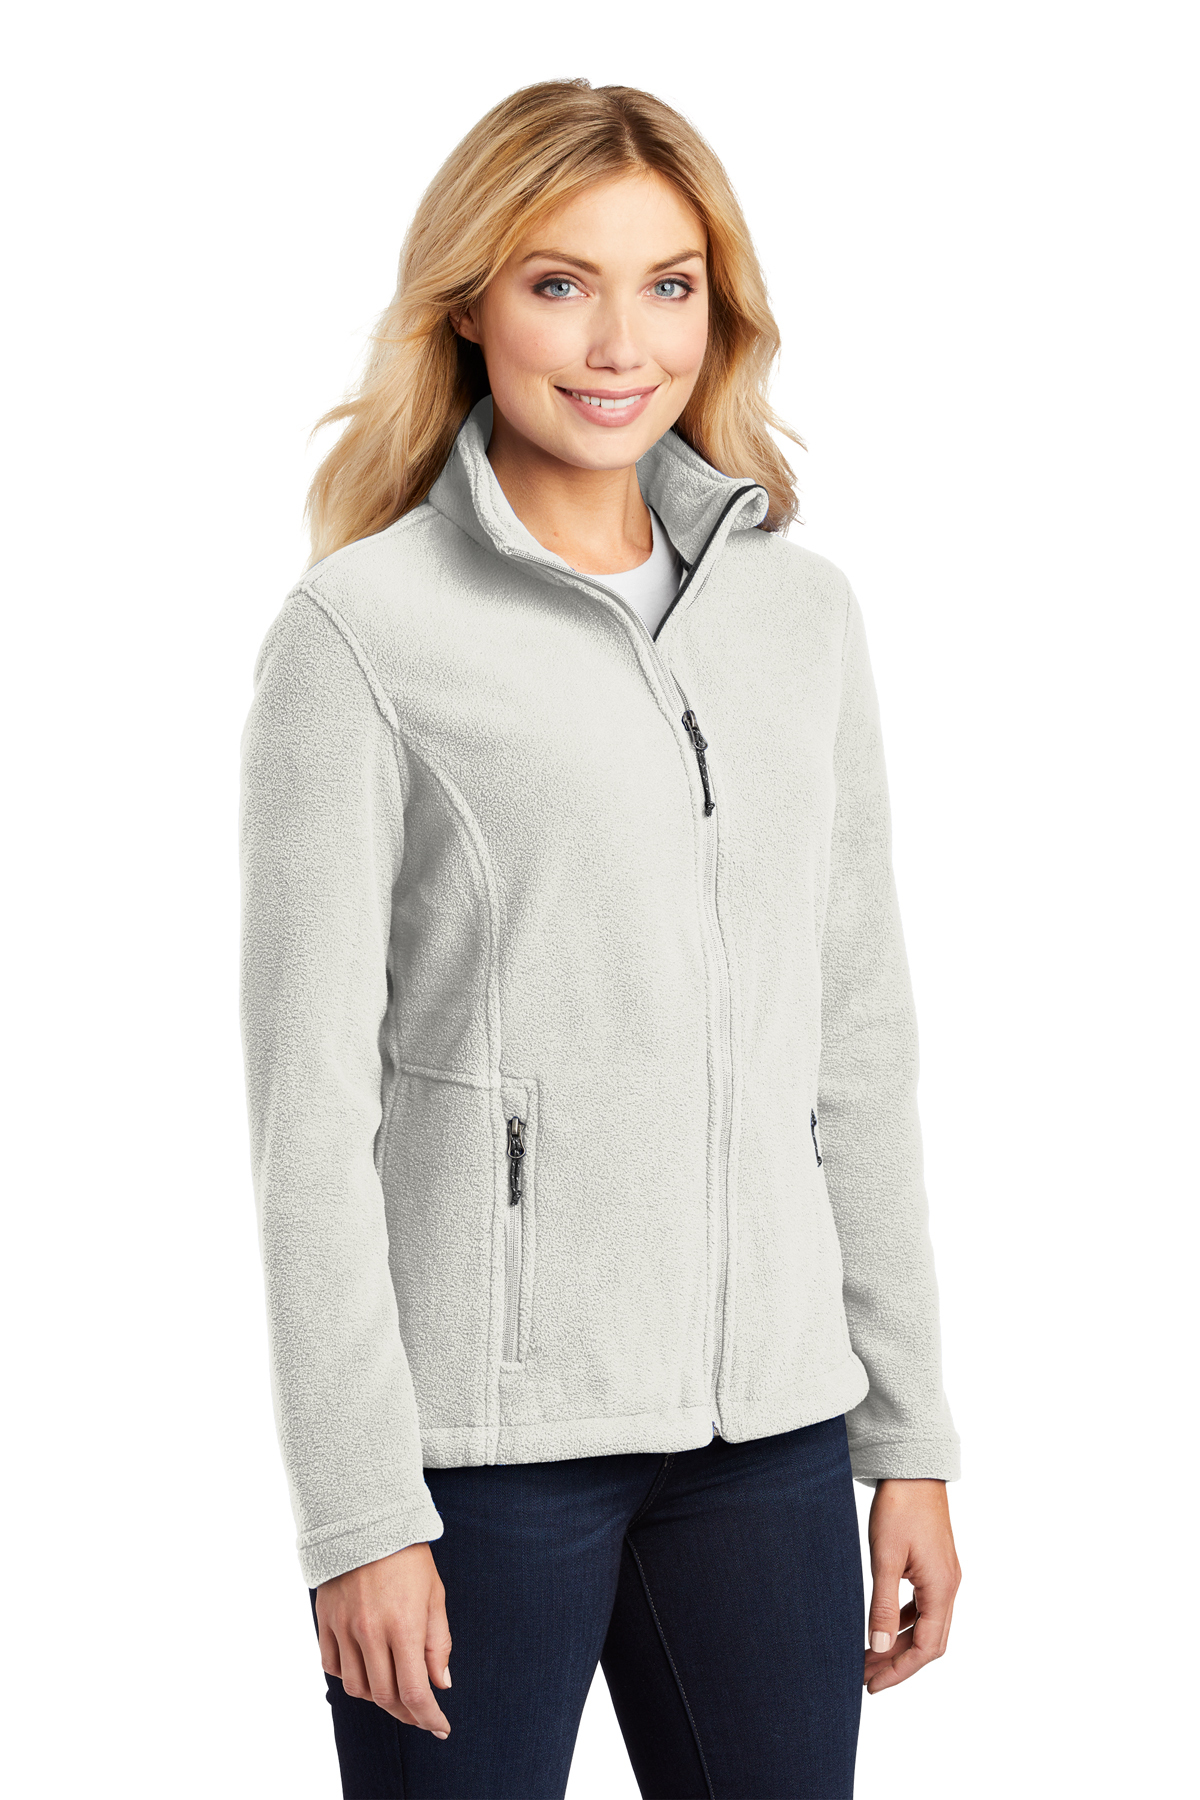 Port Authority Value Fleece Jacket – ABC Company Store